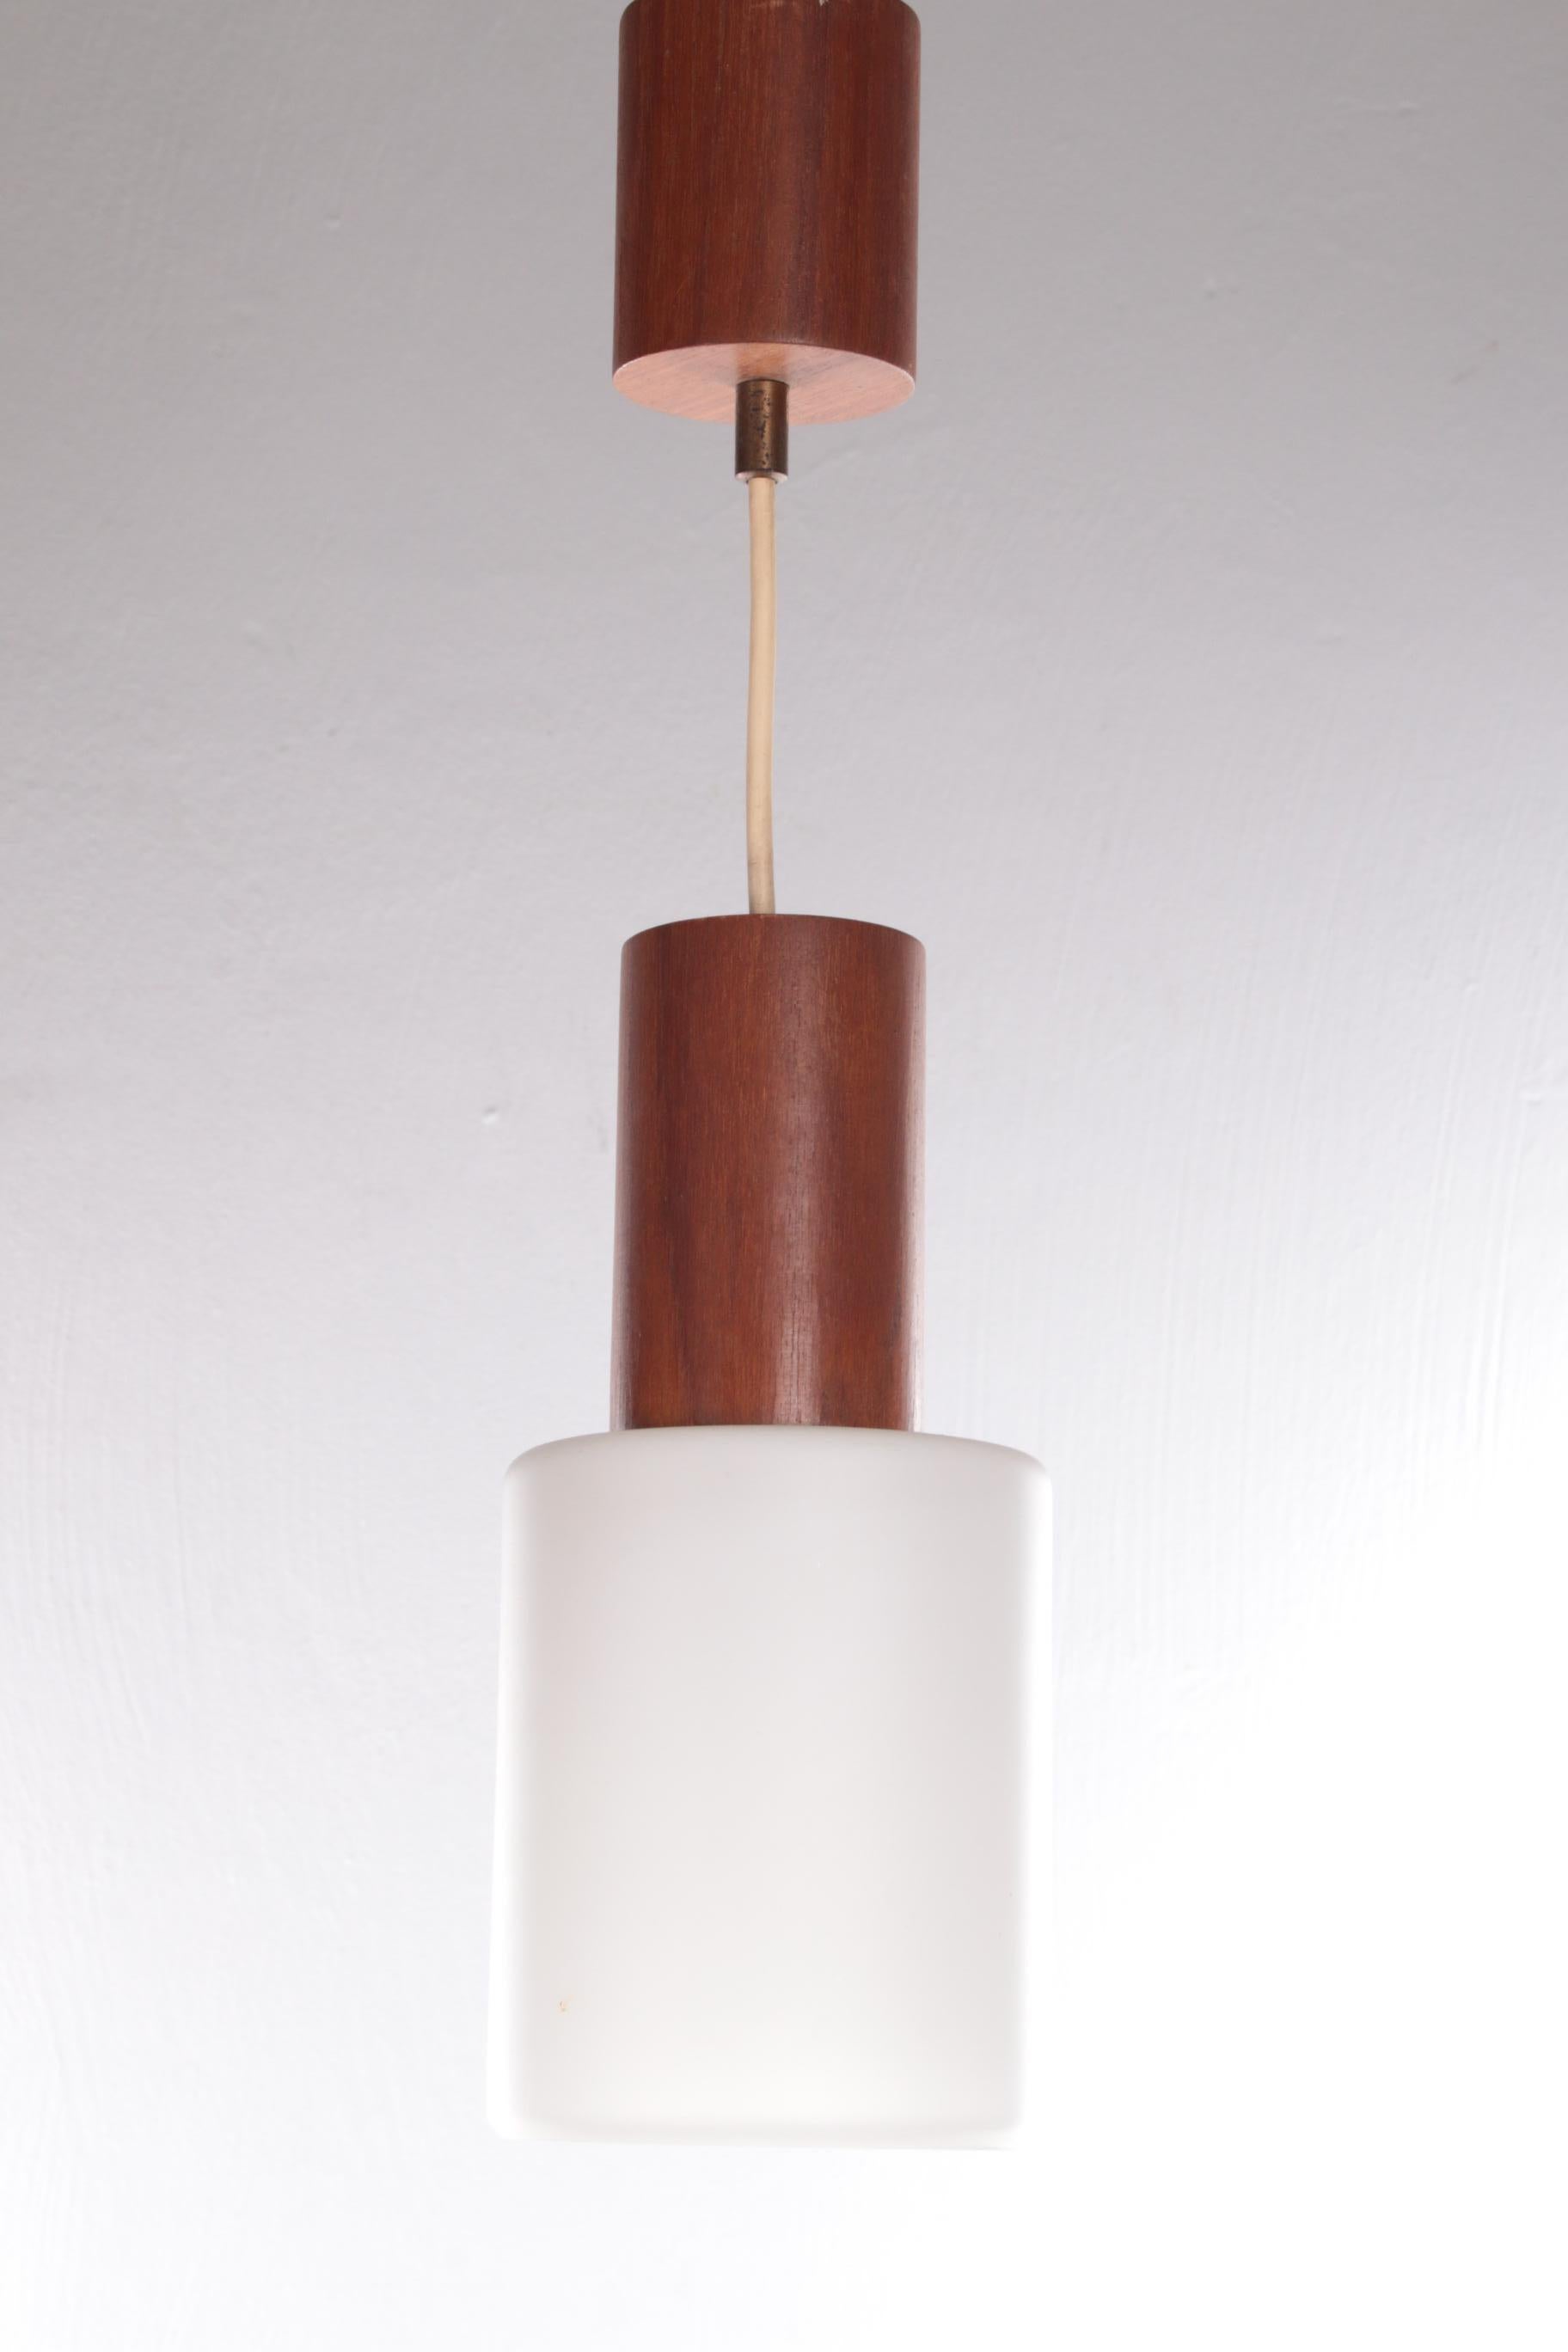 Vintage Louis Kalff lampe suspendue teck / verre opale, 1950s


Belle lampe suspendue en teck avec verre opale.

En 1925, Louis Kalff commence à travailler au département de la publicité de Philips à Eindhoven. Sous sa direction, le Lighting